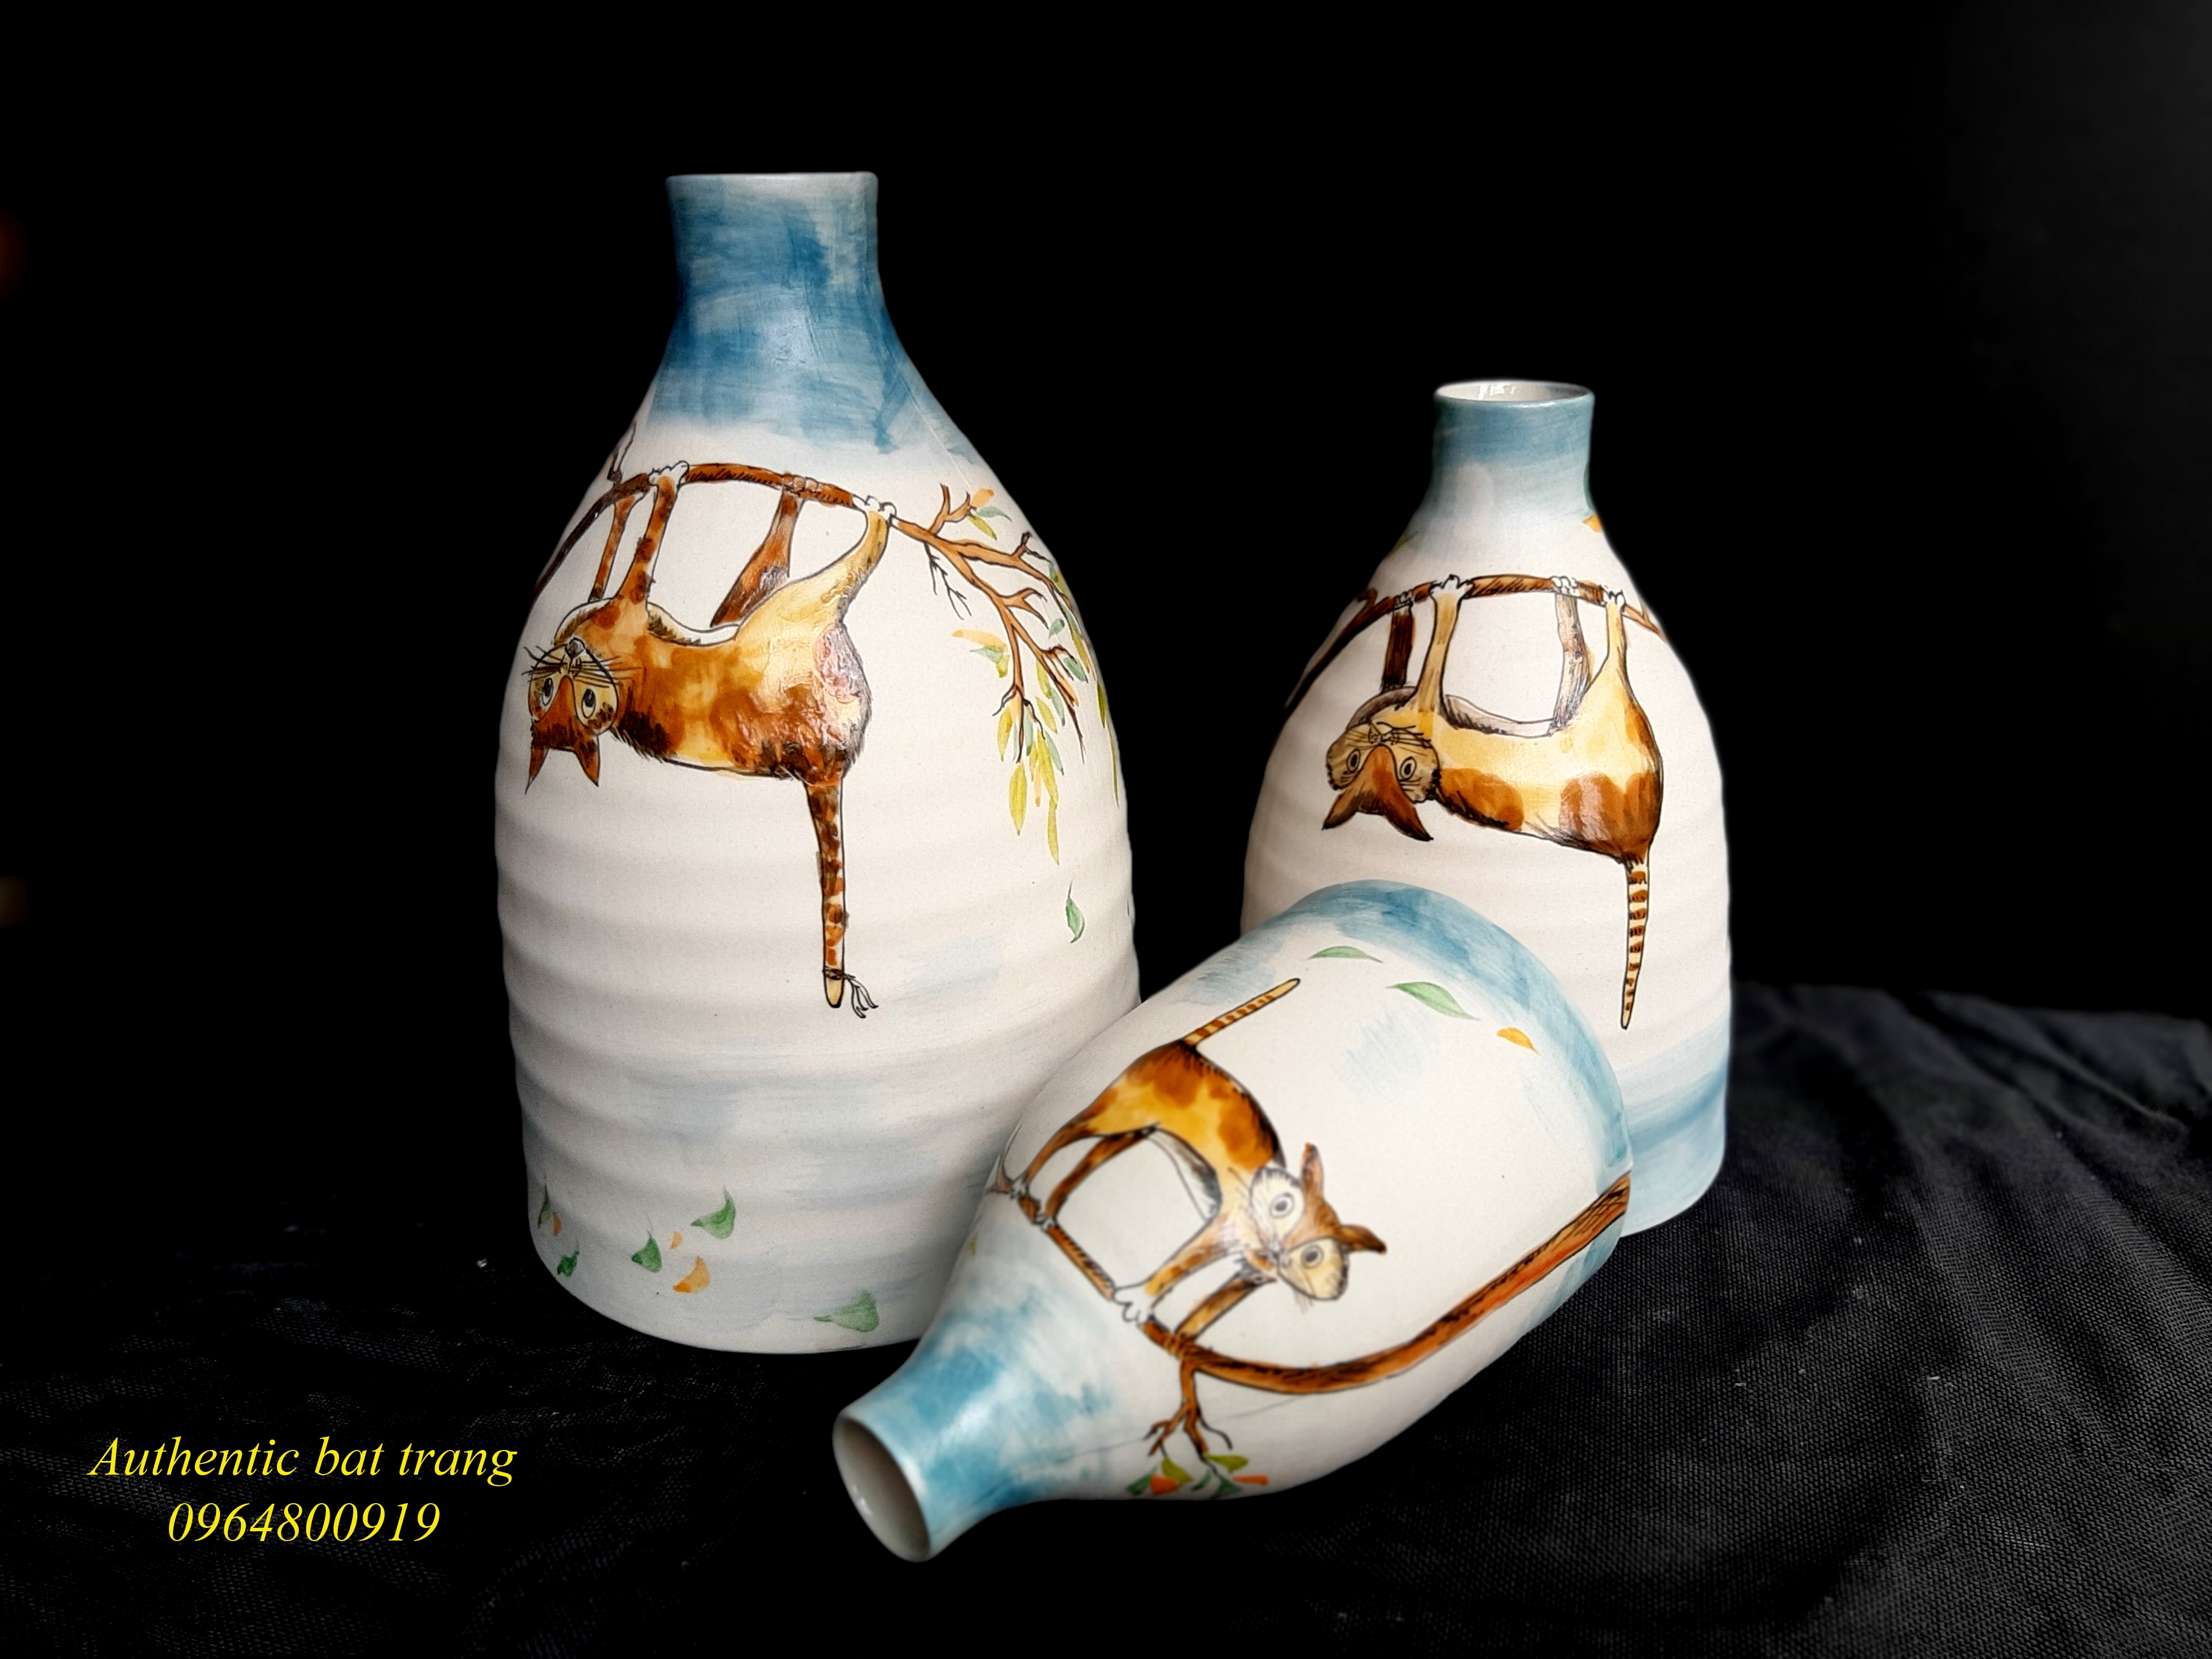 Home decor ceramics vases / Bộ bình trang trí nhà cửa họa tiết vẽ Mèo sản xuất tại xưởng gốm sứ Authentic bat  trang